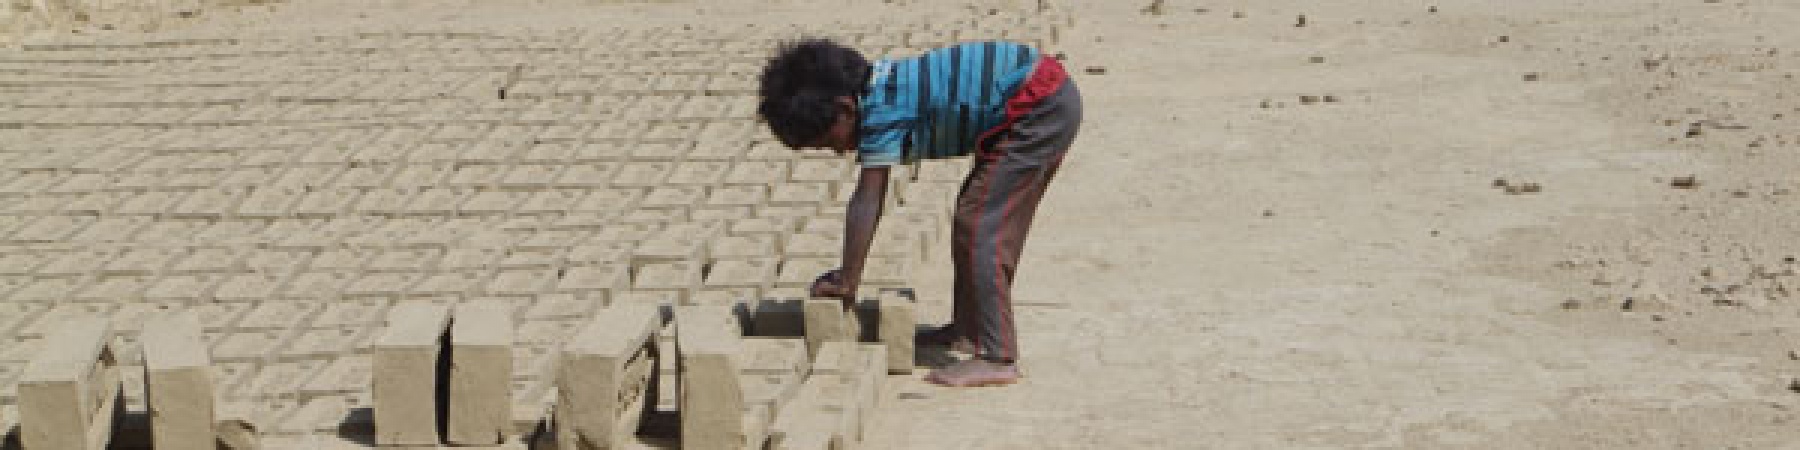 Il Nepal tra educazione e sfruttamento